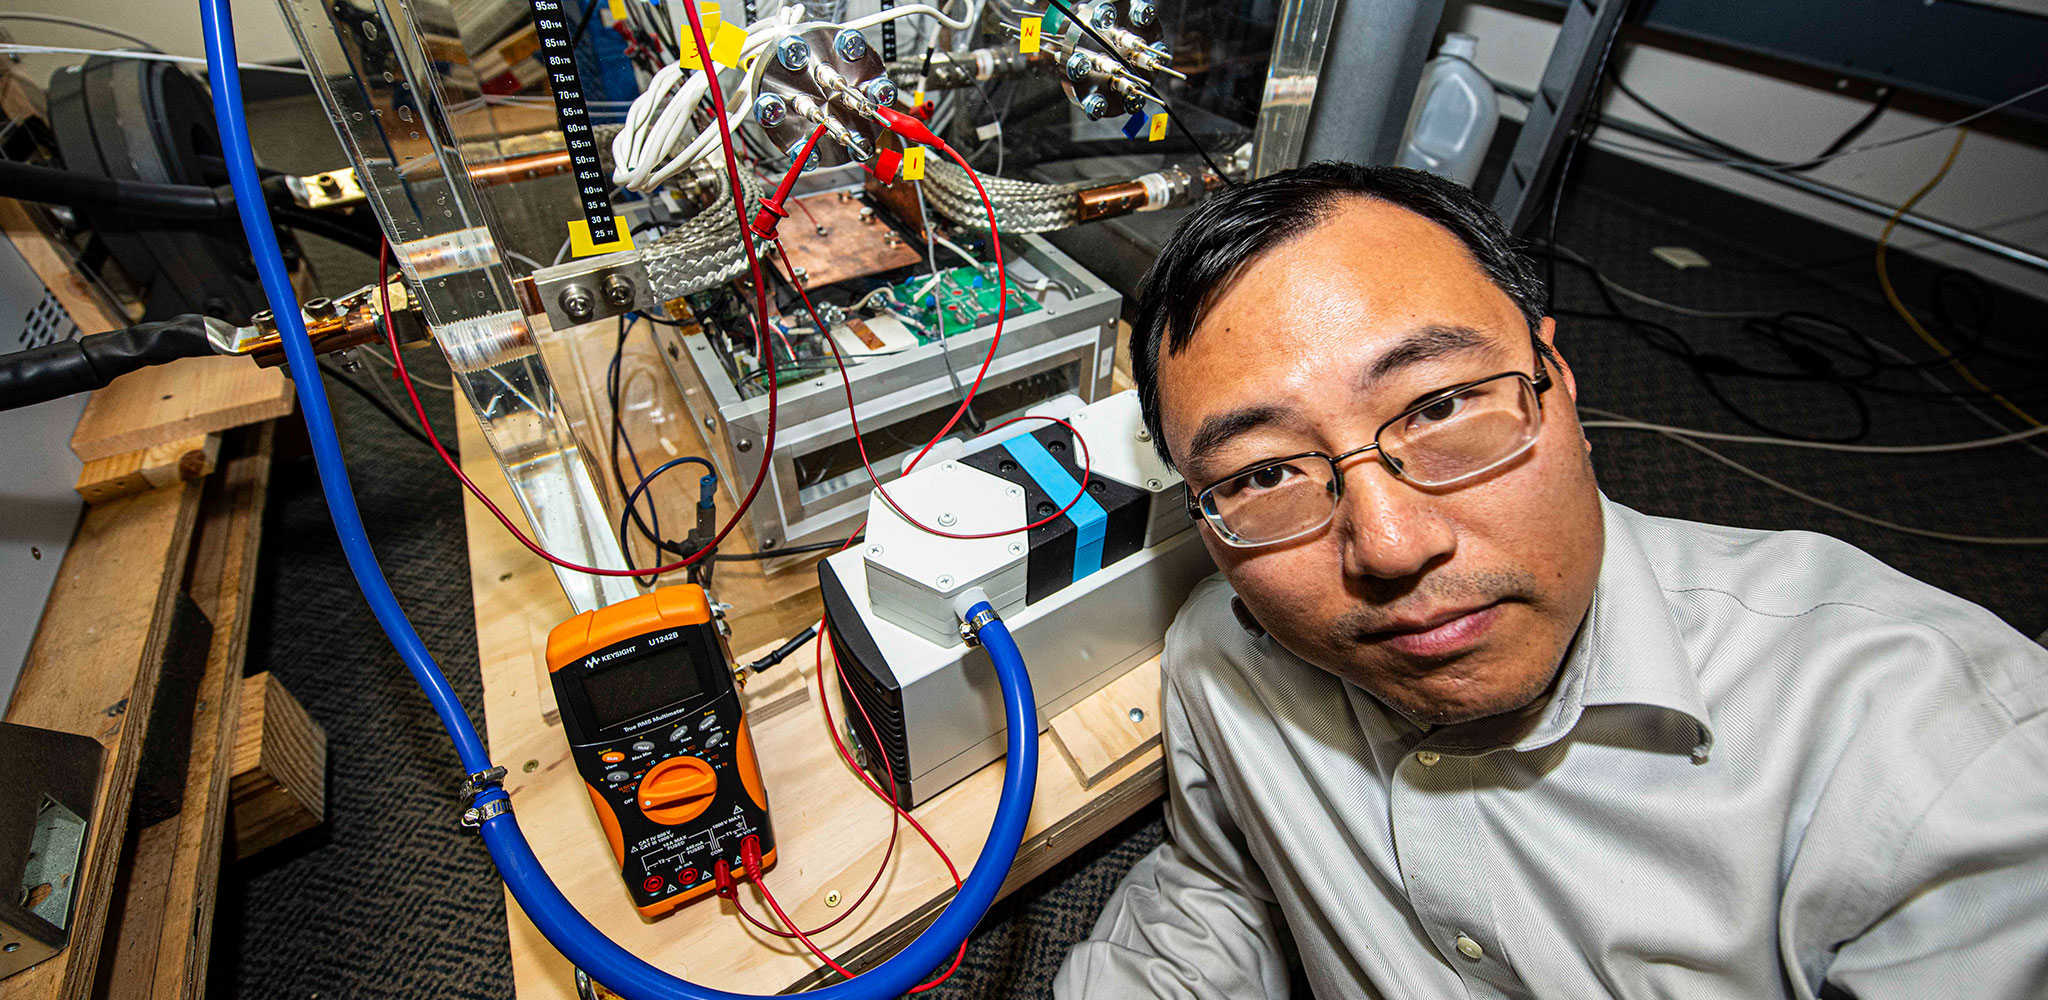 NPS Associate Professor Dr. Di Zhang in his lab testing a circuit breaker.